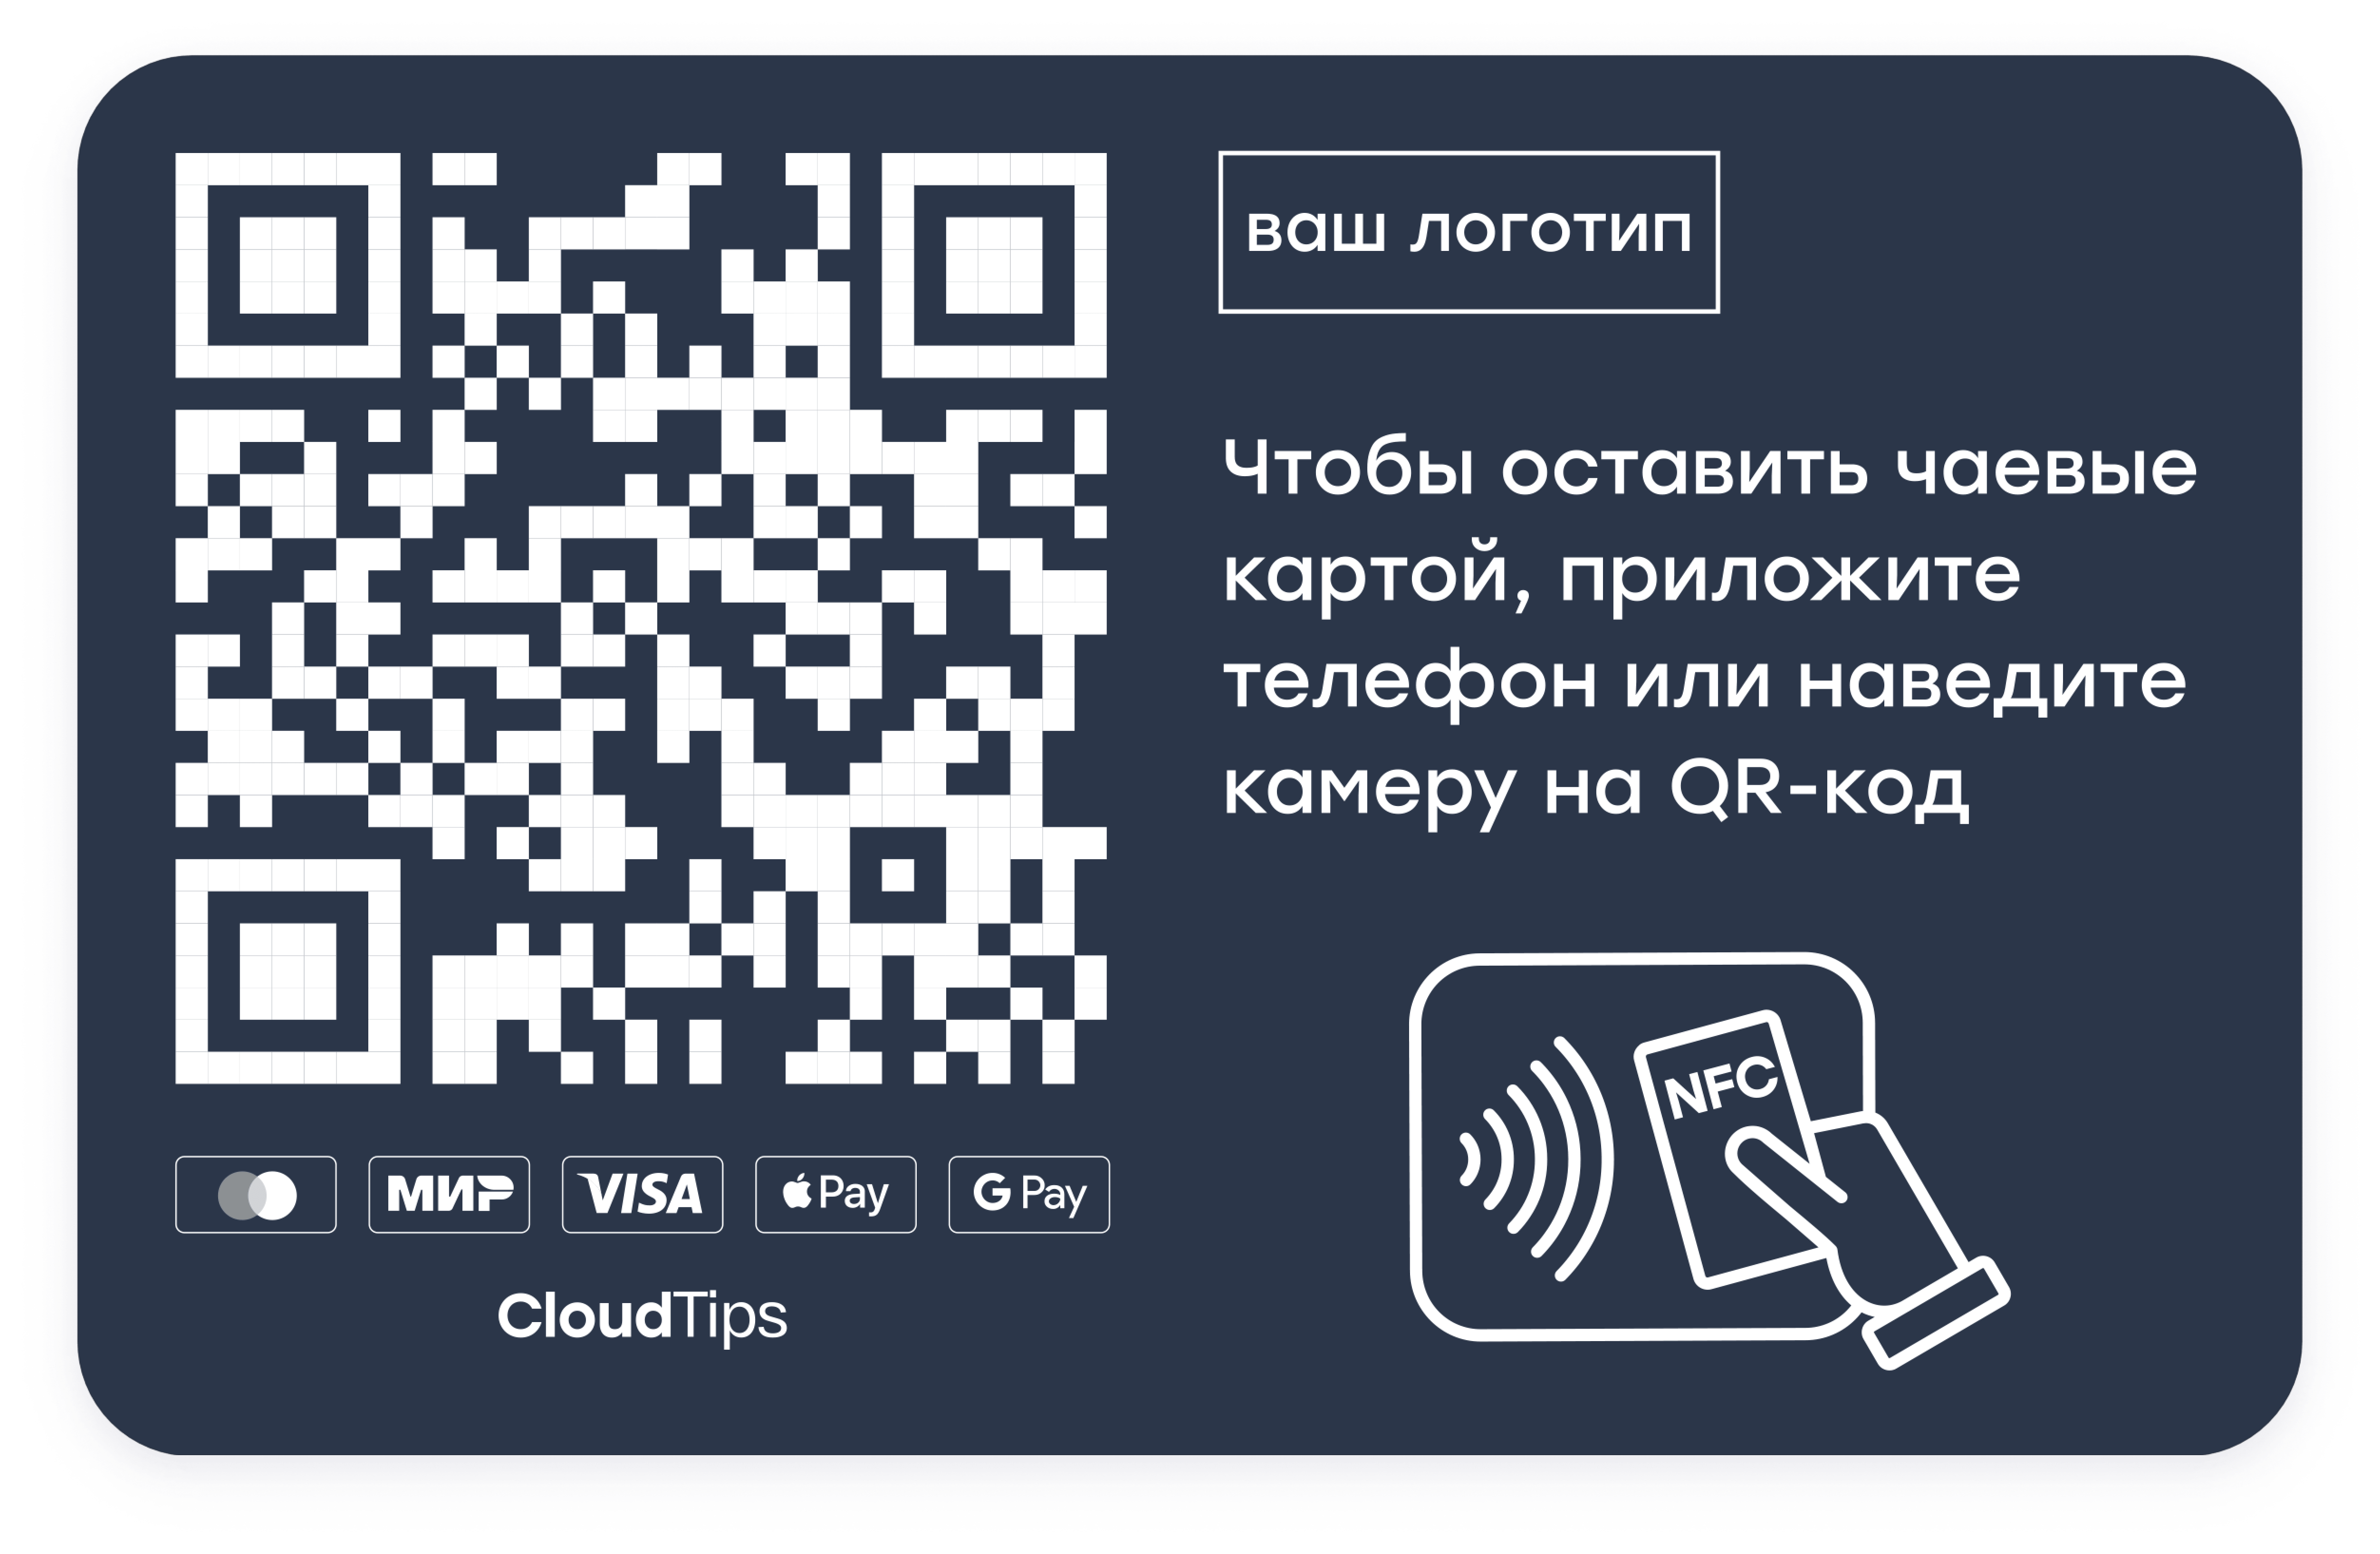 Электронная визитка с qr кодом. QR код. Визитка с QR кодом. Чаевые по QR коду.